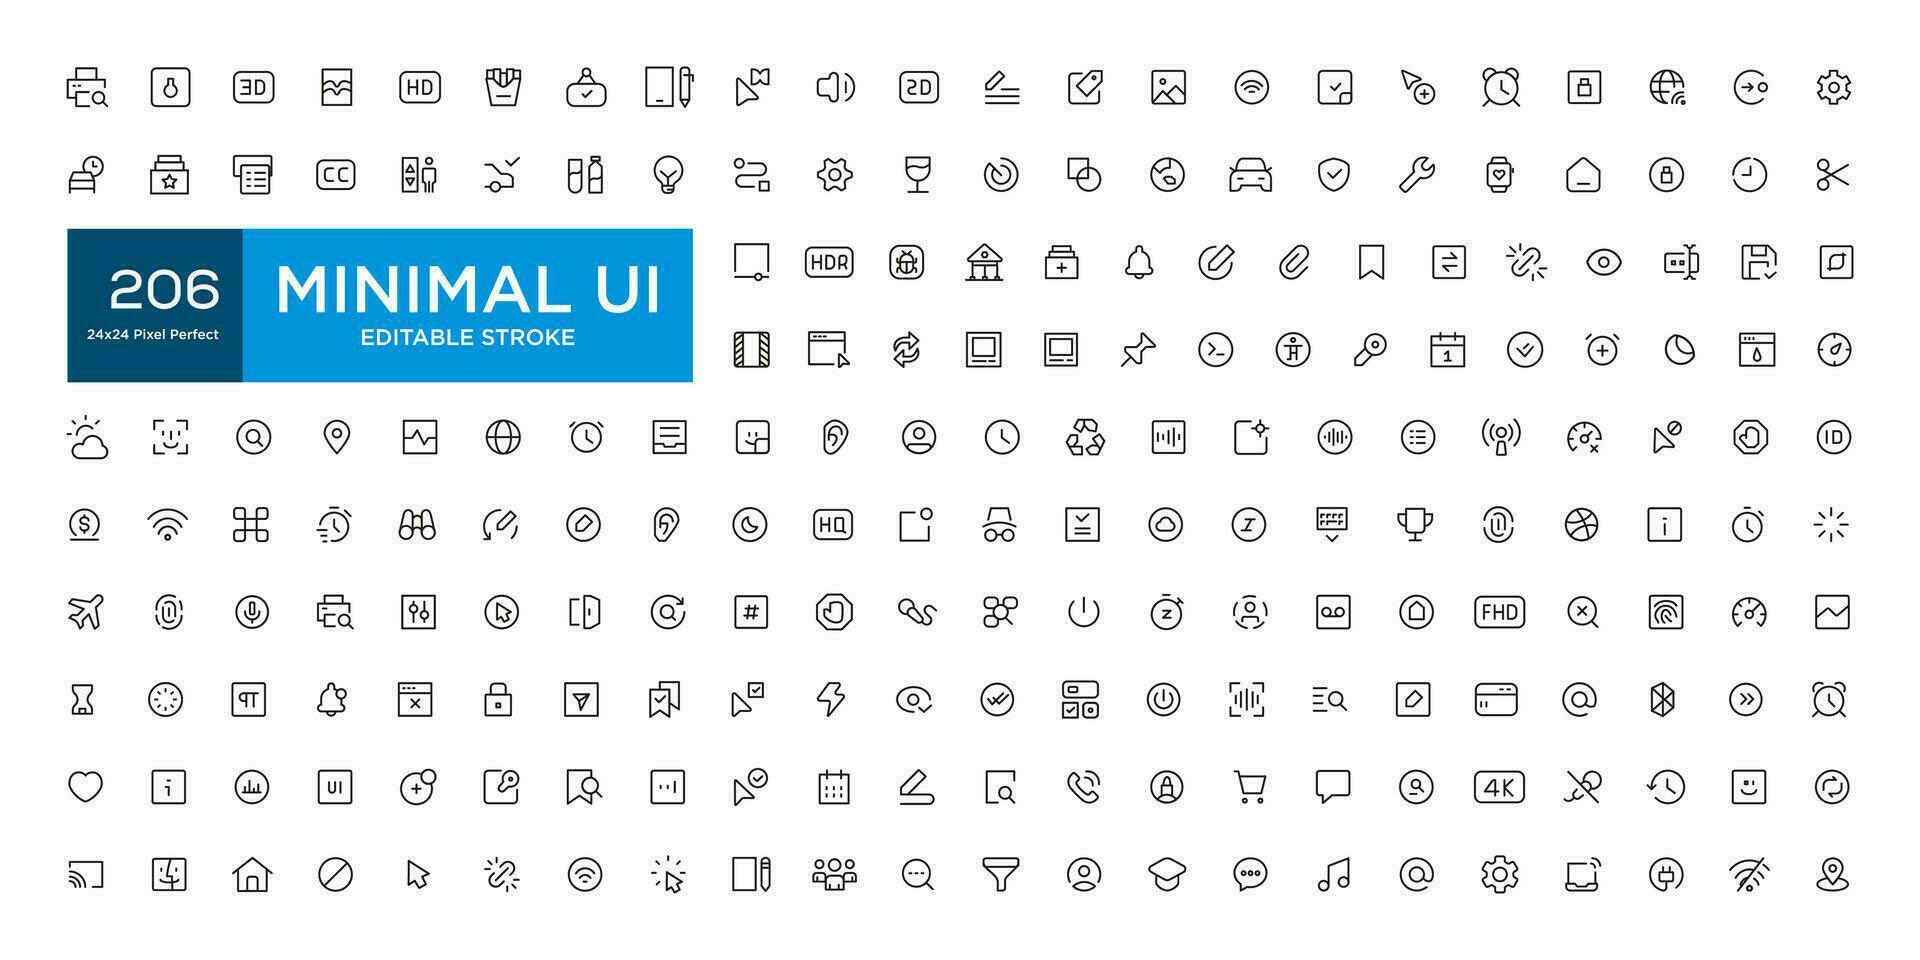 mega conjunto de ui ux iconos, usuario interfaz icono conjunto colección vector